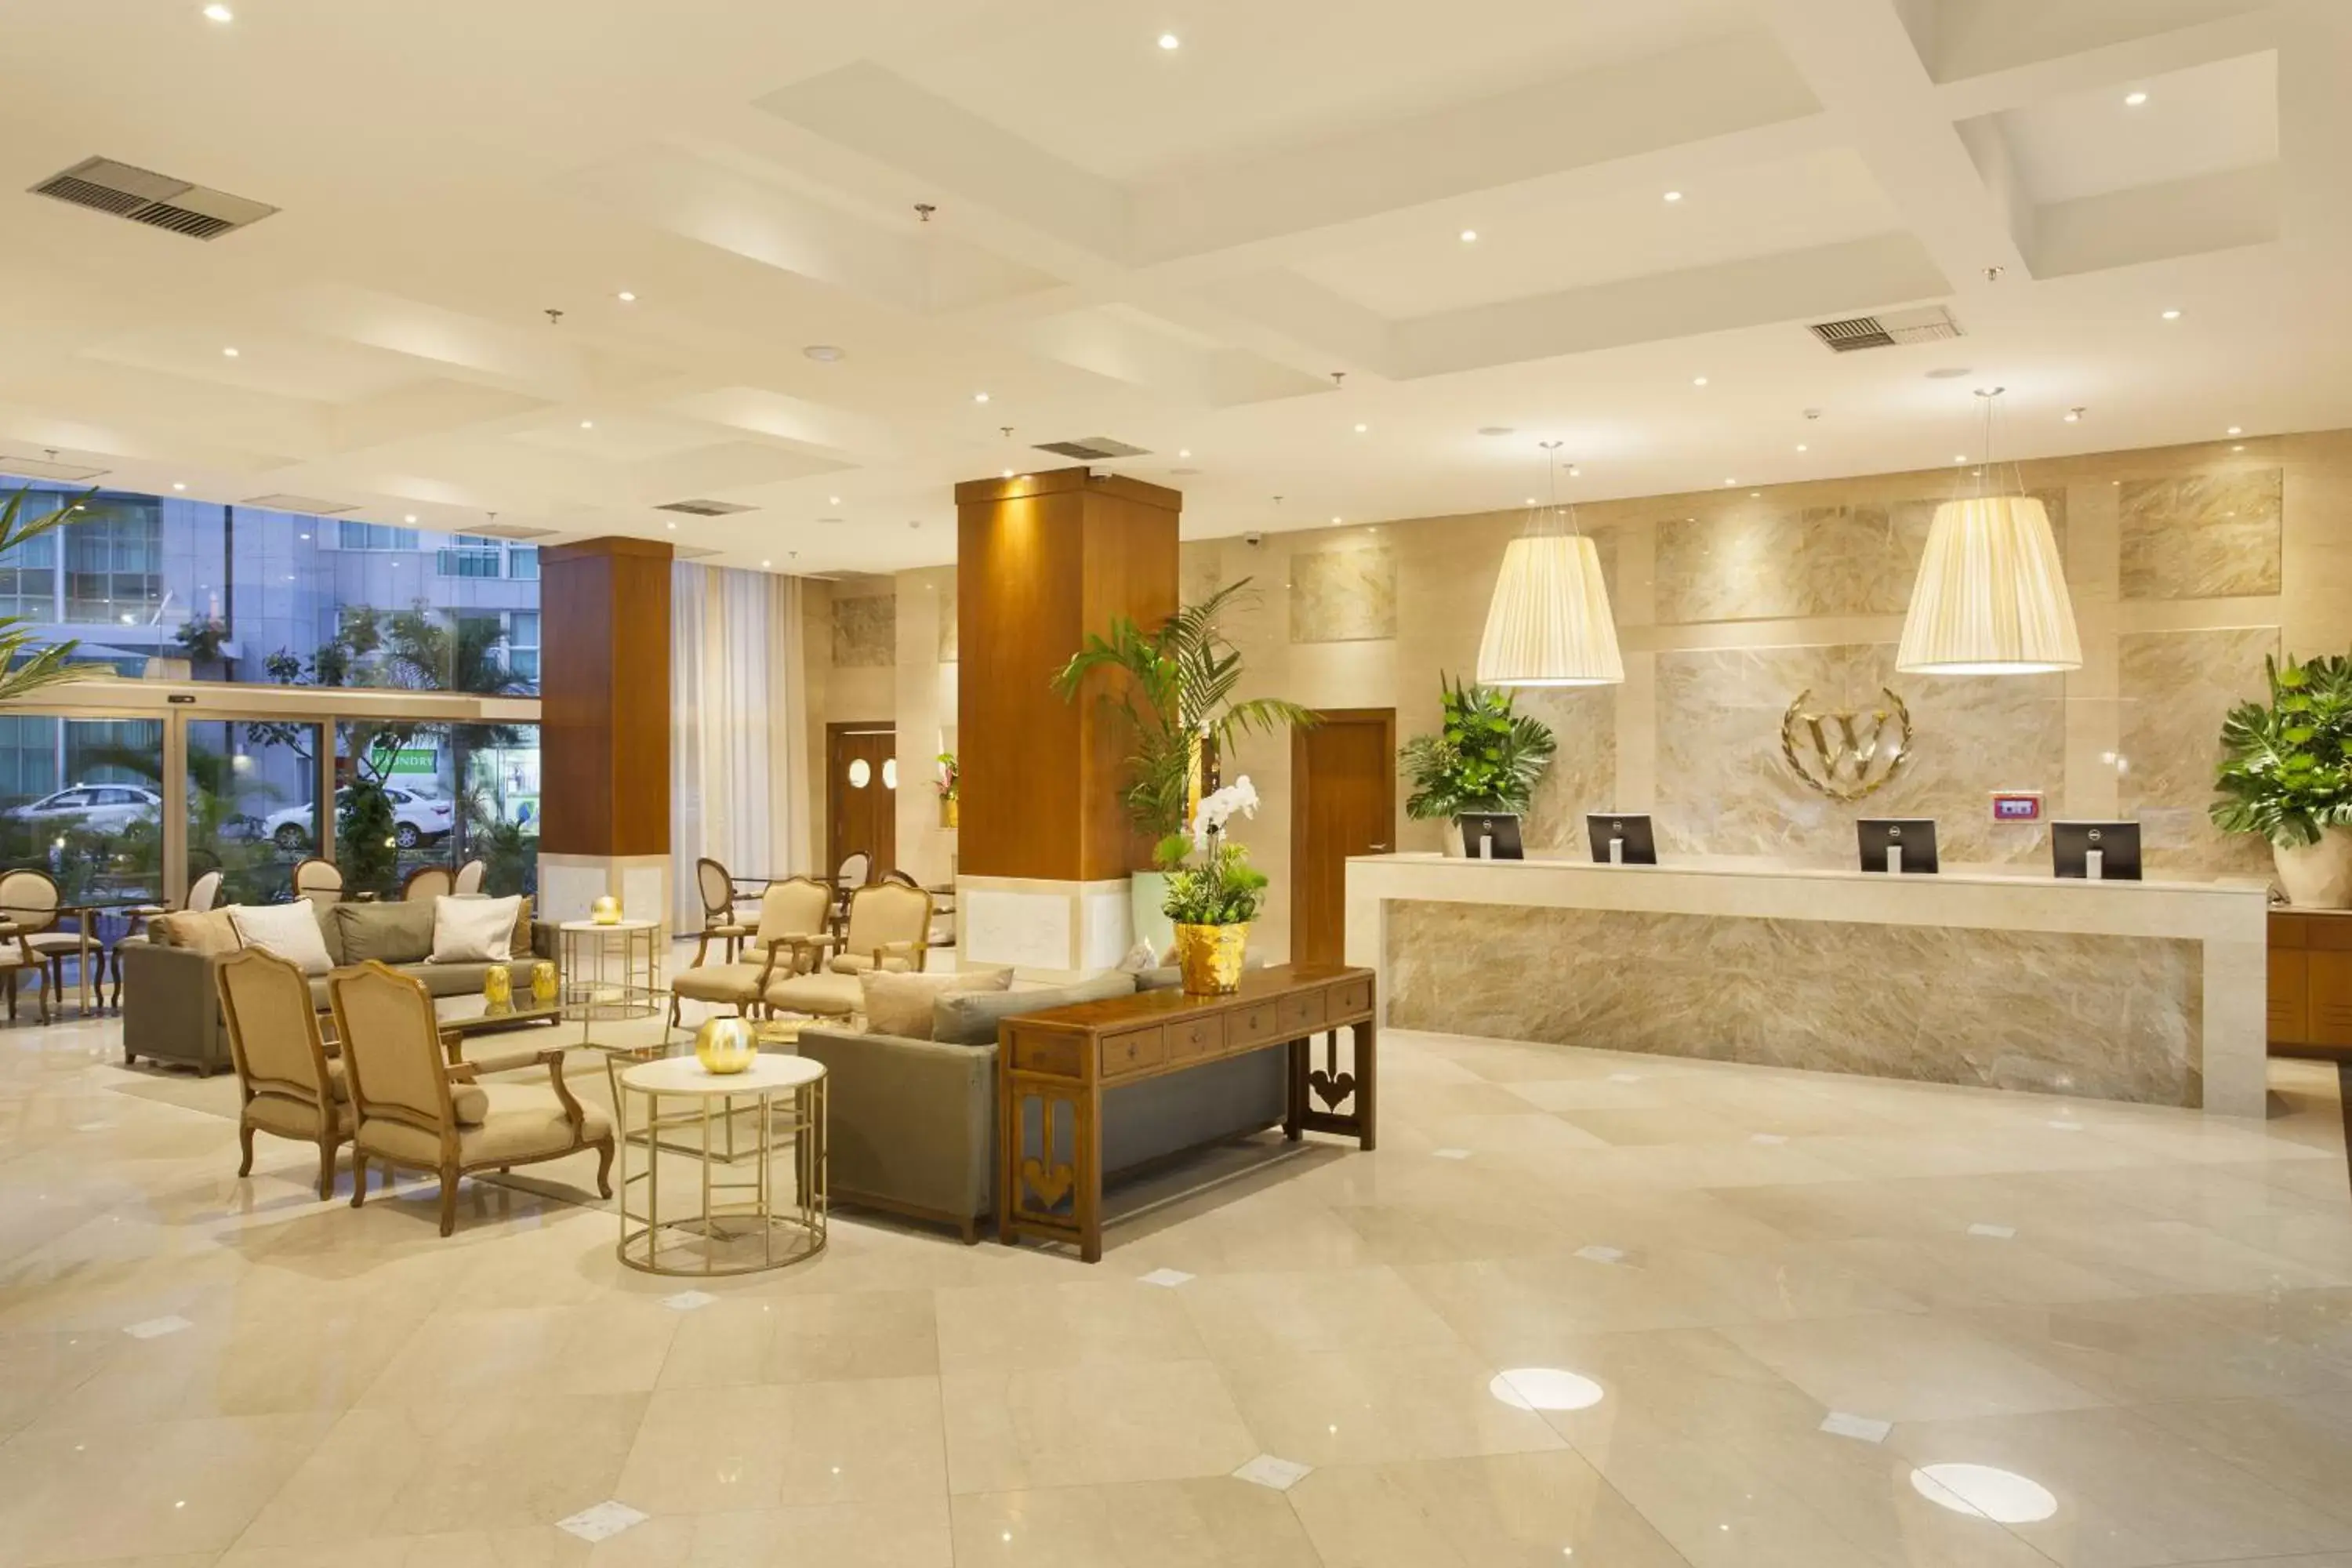 Lobby or reception, Lobby/Reception in Windsor Brasilia Hotel